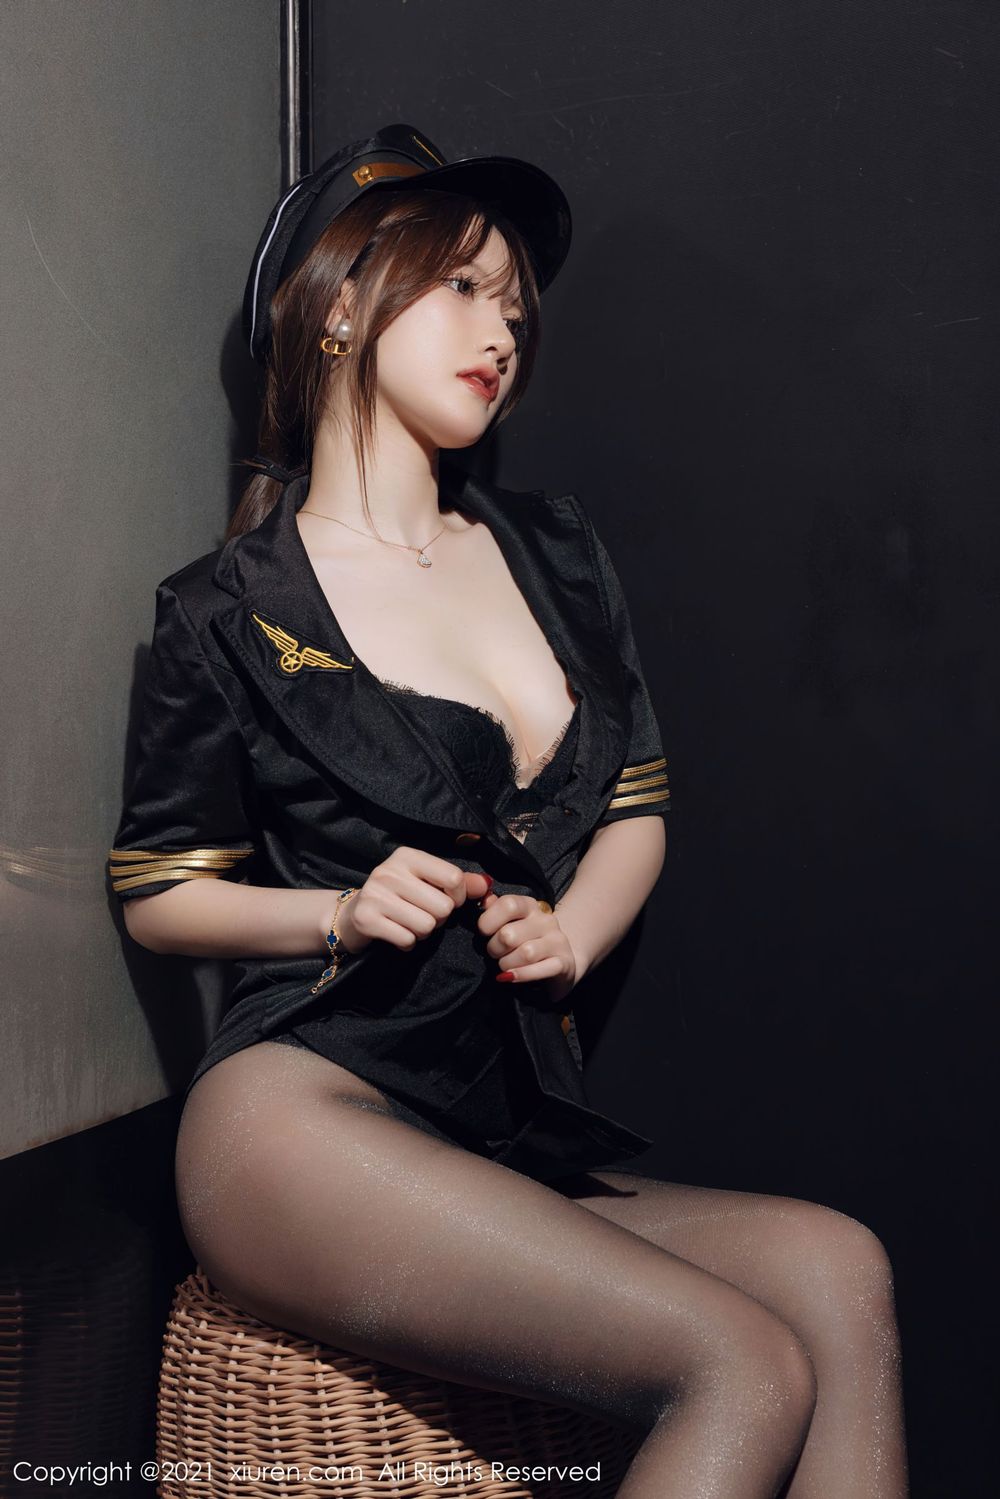 美女模特美桃酱 - 空军制服+黑丝系列性感写真